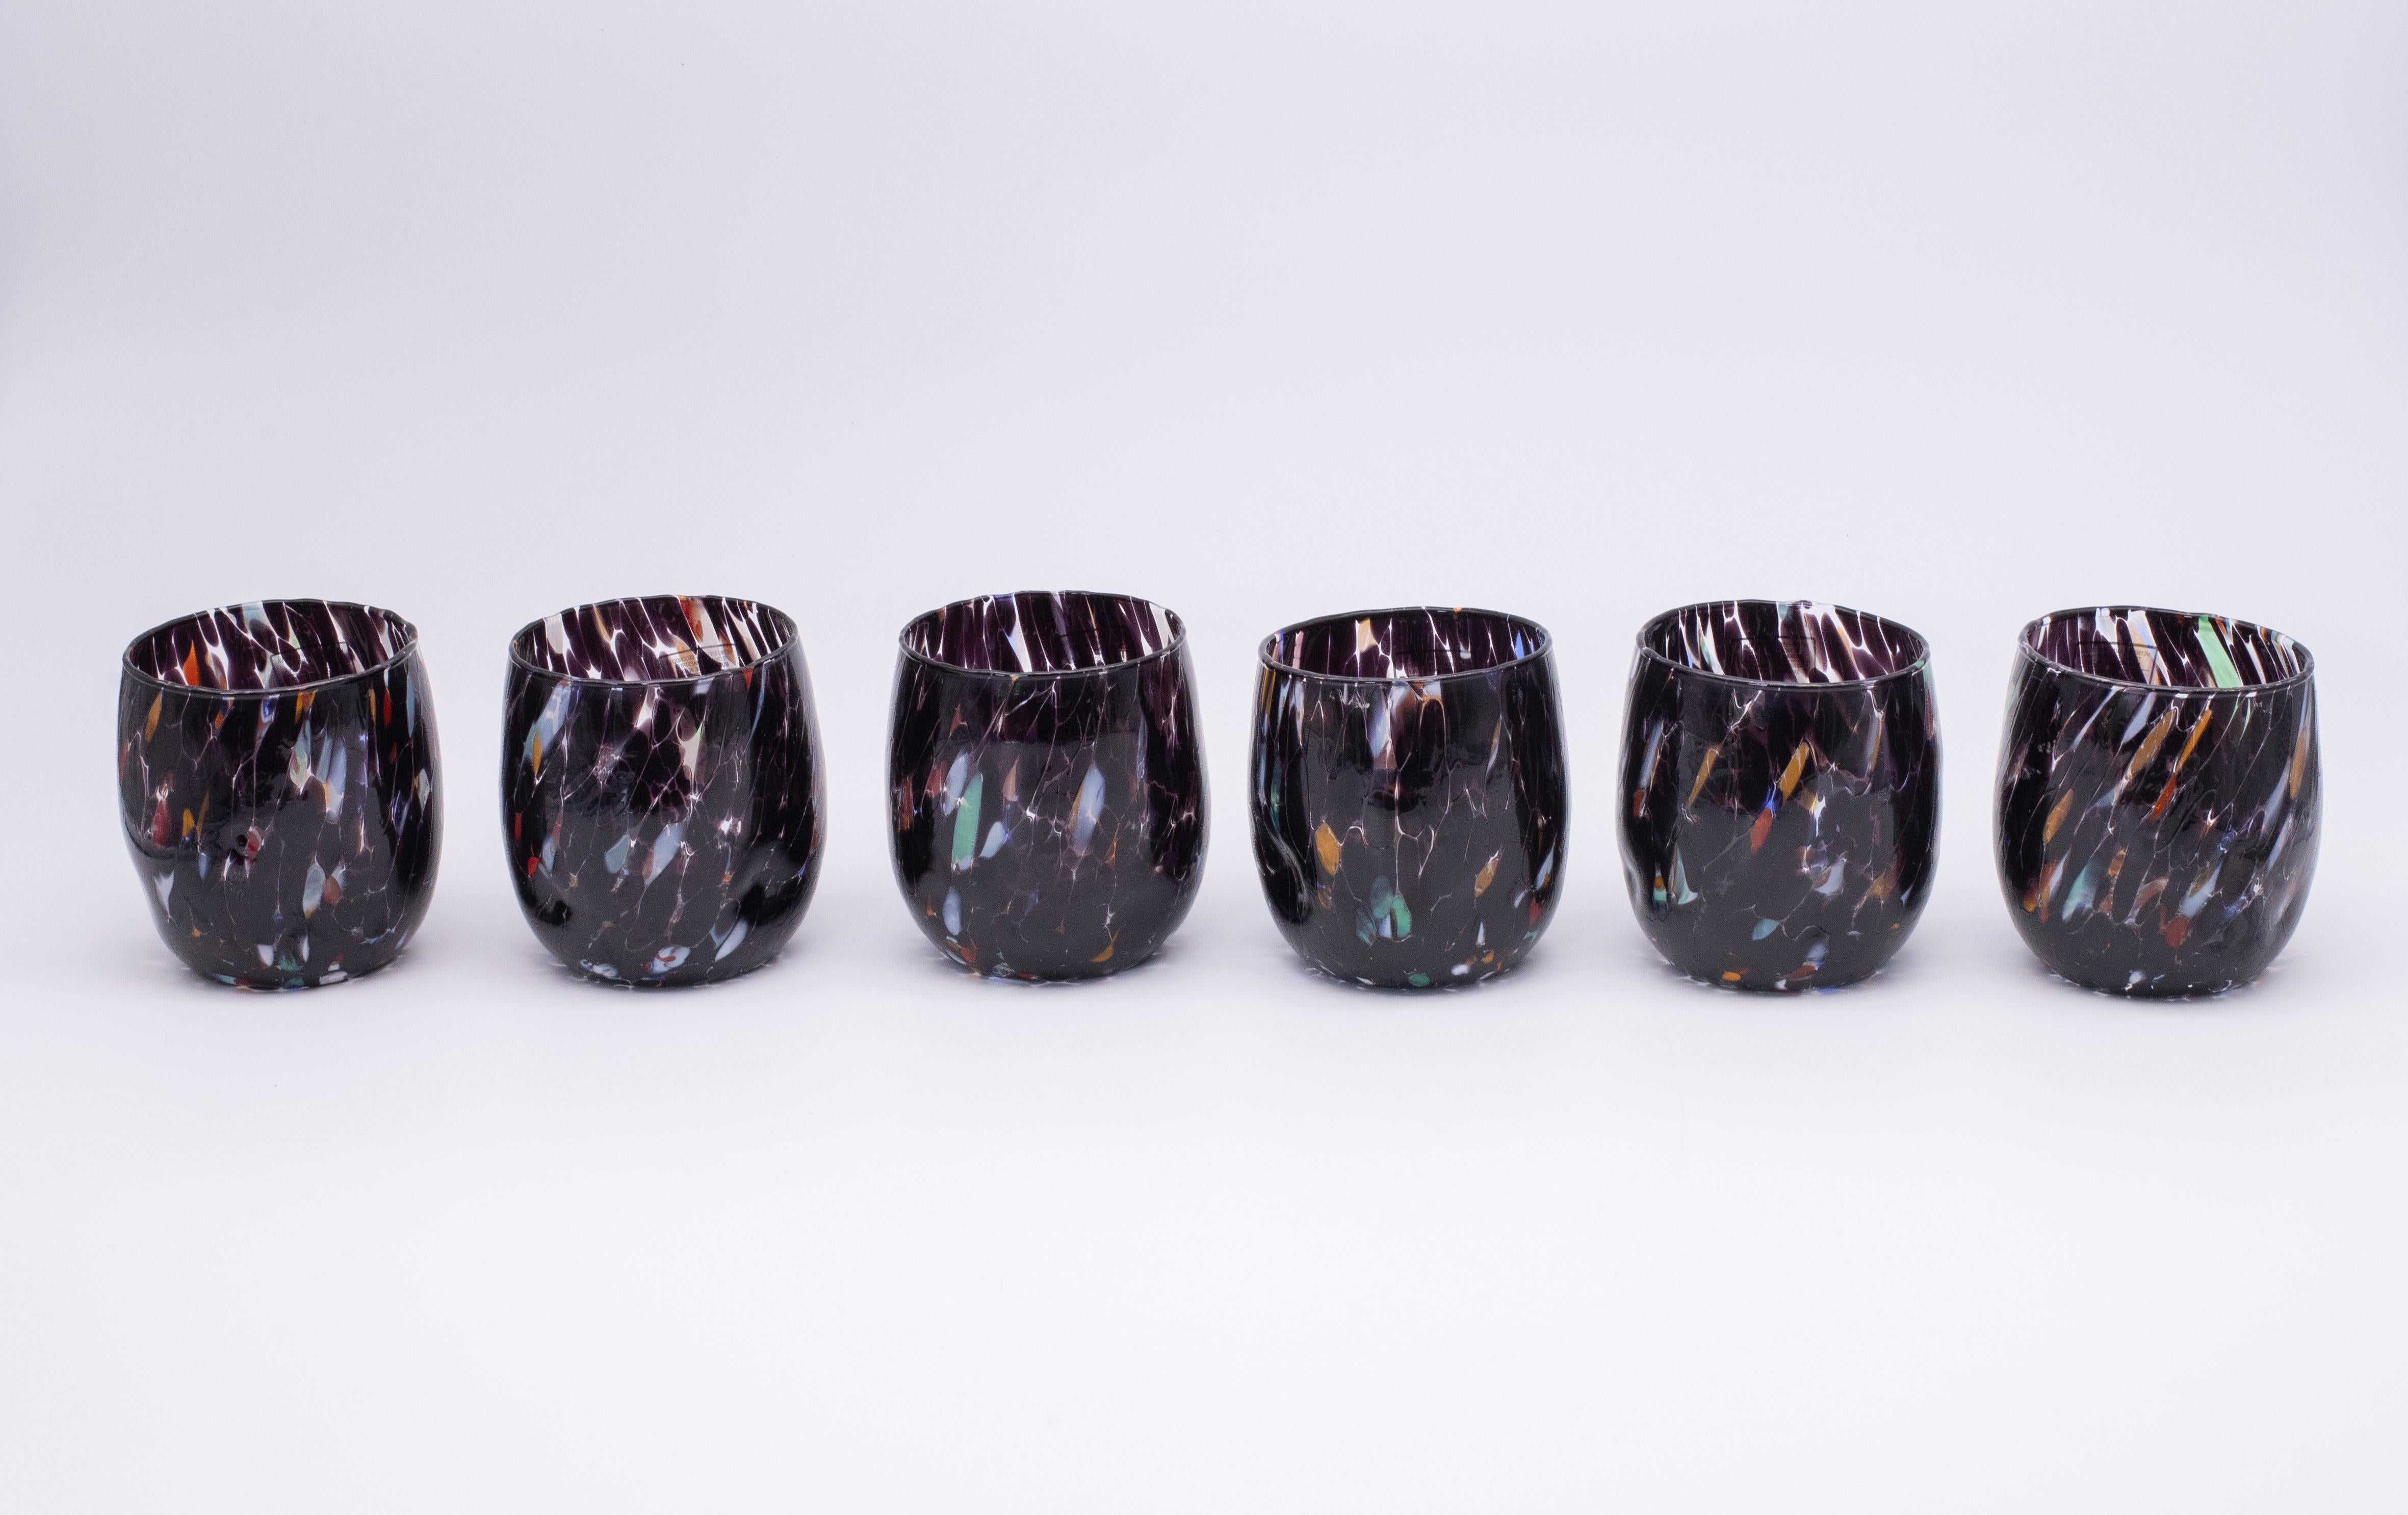 Set aus sechs Wasser-, Trink- und Weingläsern Farbe Schwarz - Murano Glas - Made in Italy.

Diese individuellen Murano-Gläser sind von dem klassischen Murano-Glas 